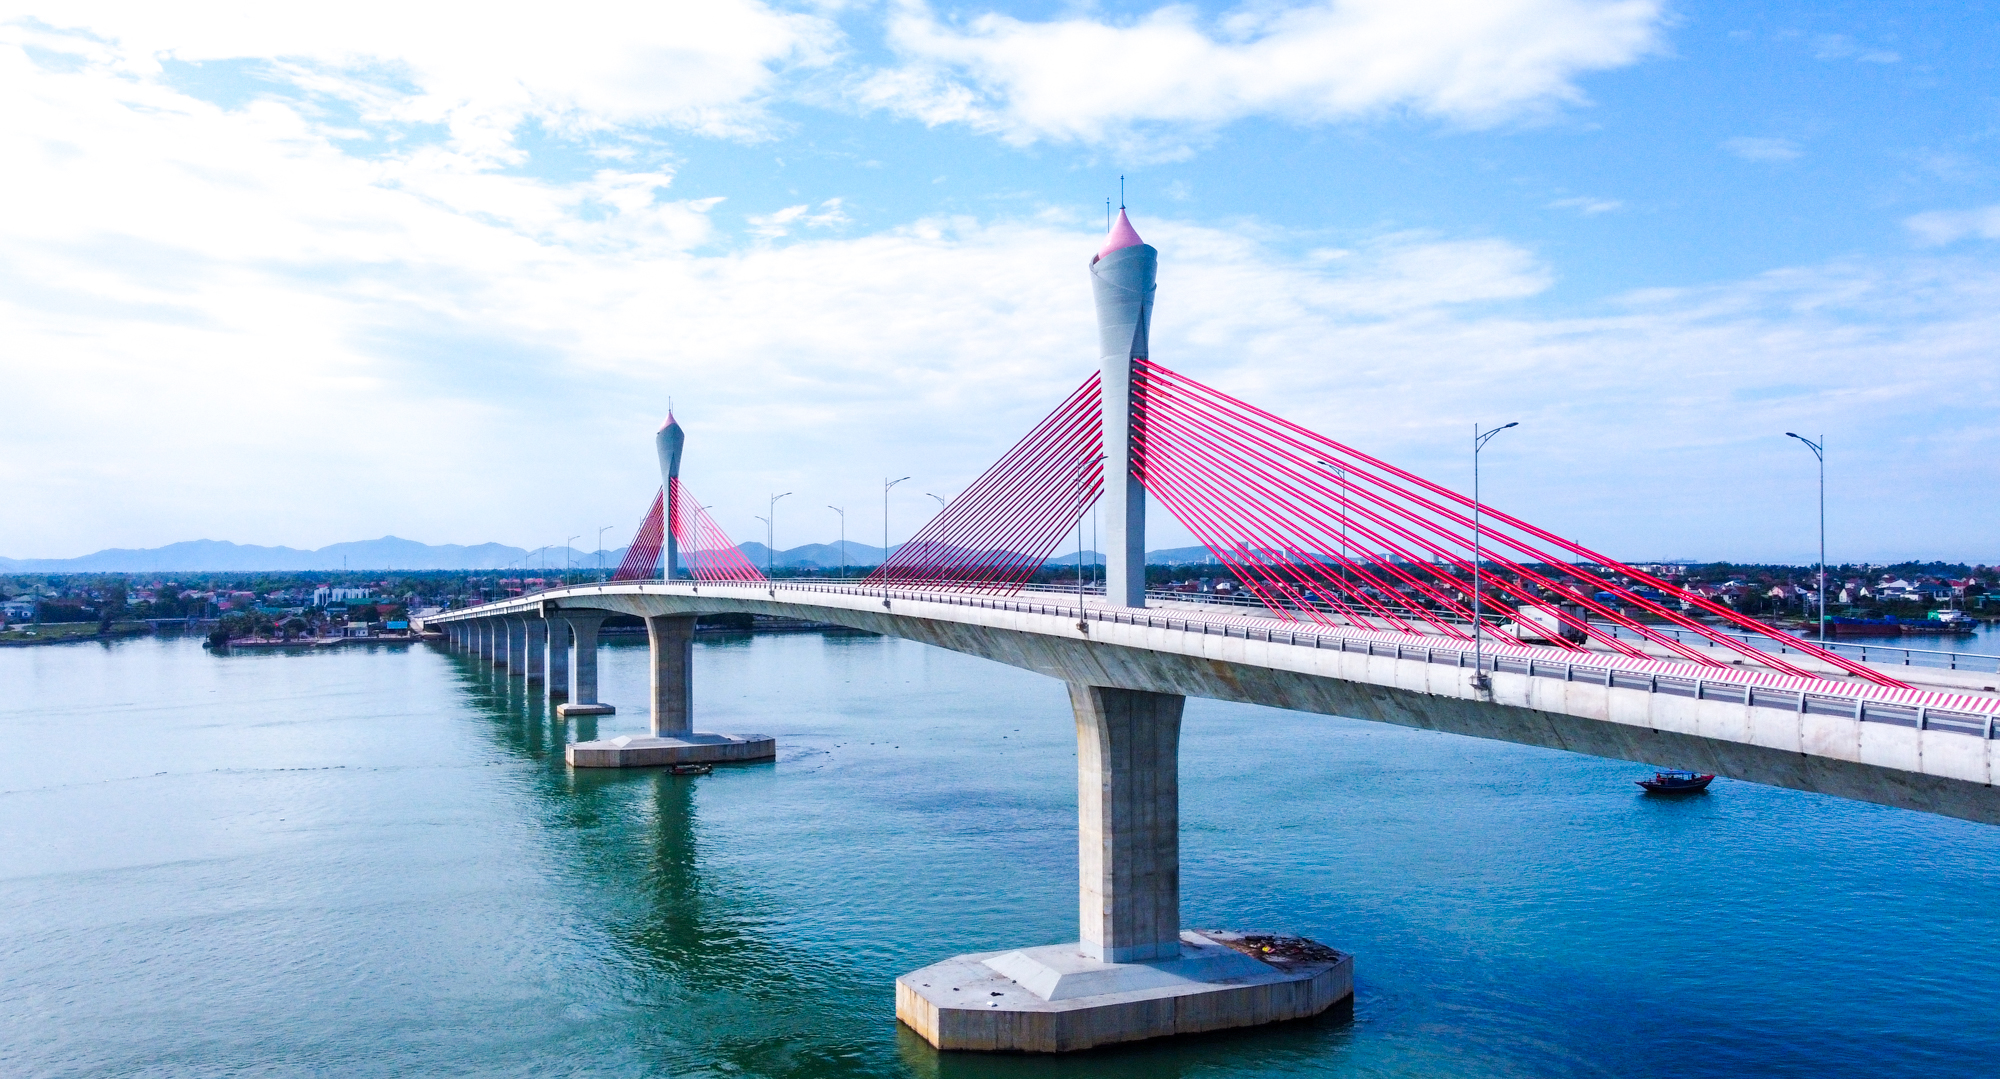 Cầu Cửa Hội nối Nghệ An và Hà Tĩnh qua sông Lam sẽ mở rộng tính kết nối của hành lang kinh tế phía Đông Nghệ An.